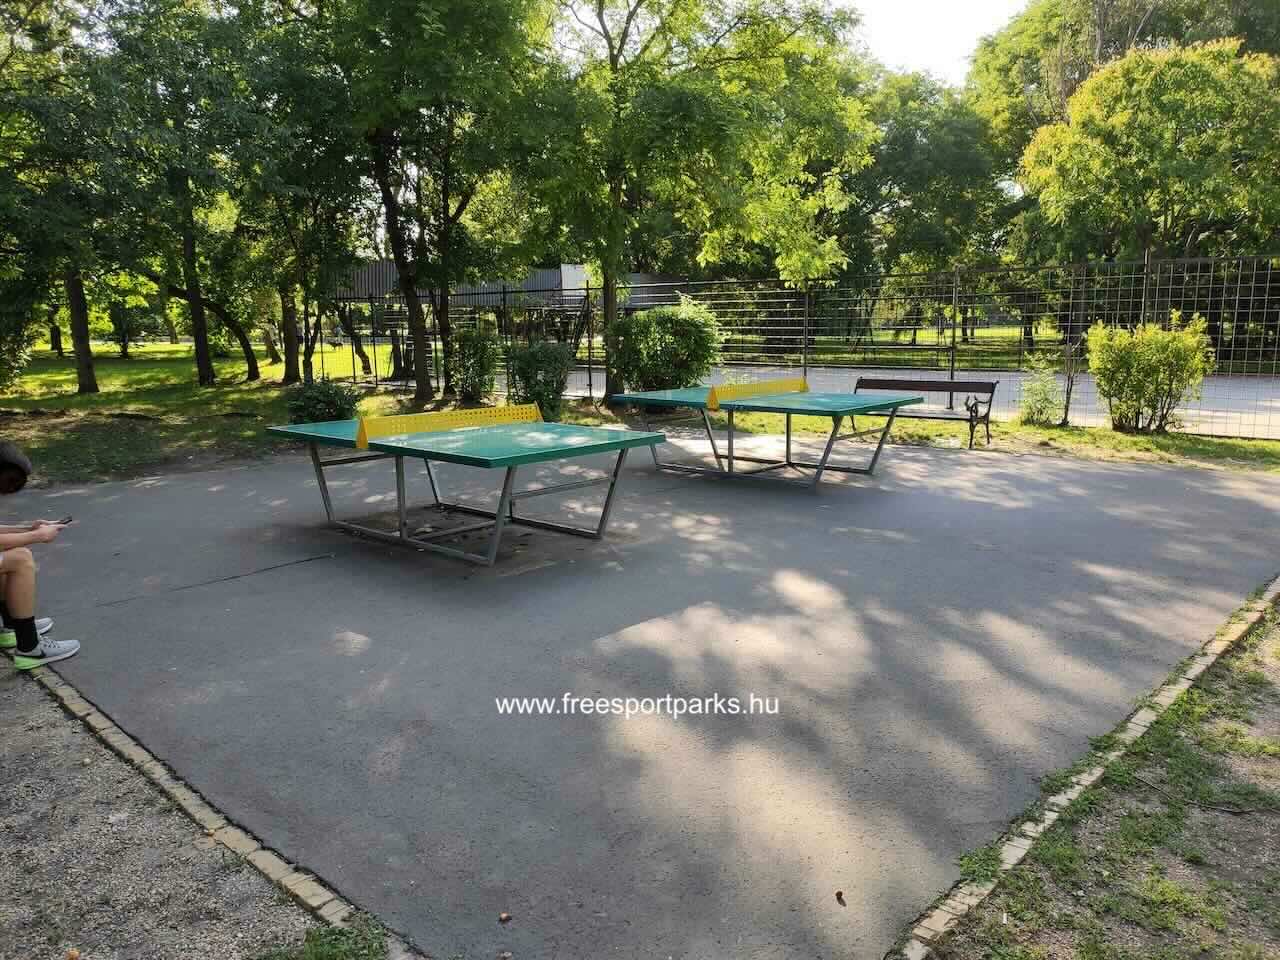 ping-pong asztalok fém hálóval, Óhegy Szabadidőpark, Kőbánya - Free Sport Parks blog